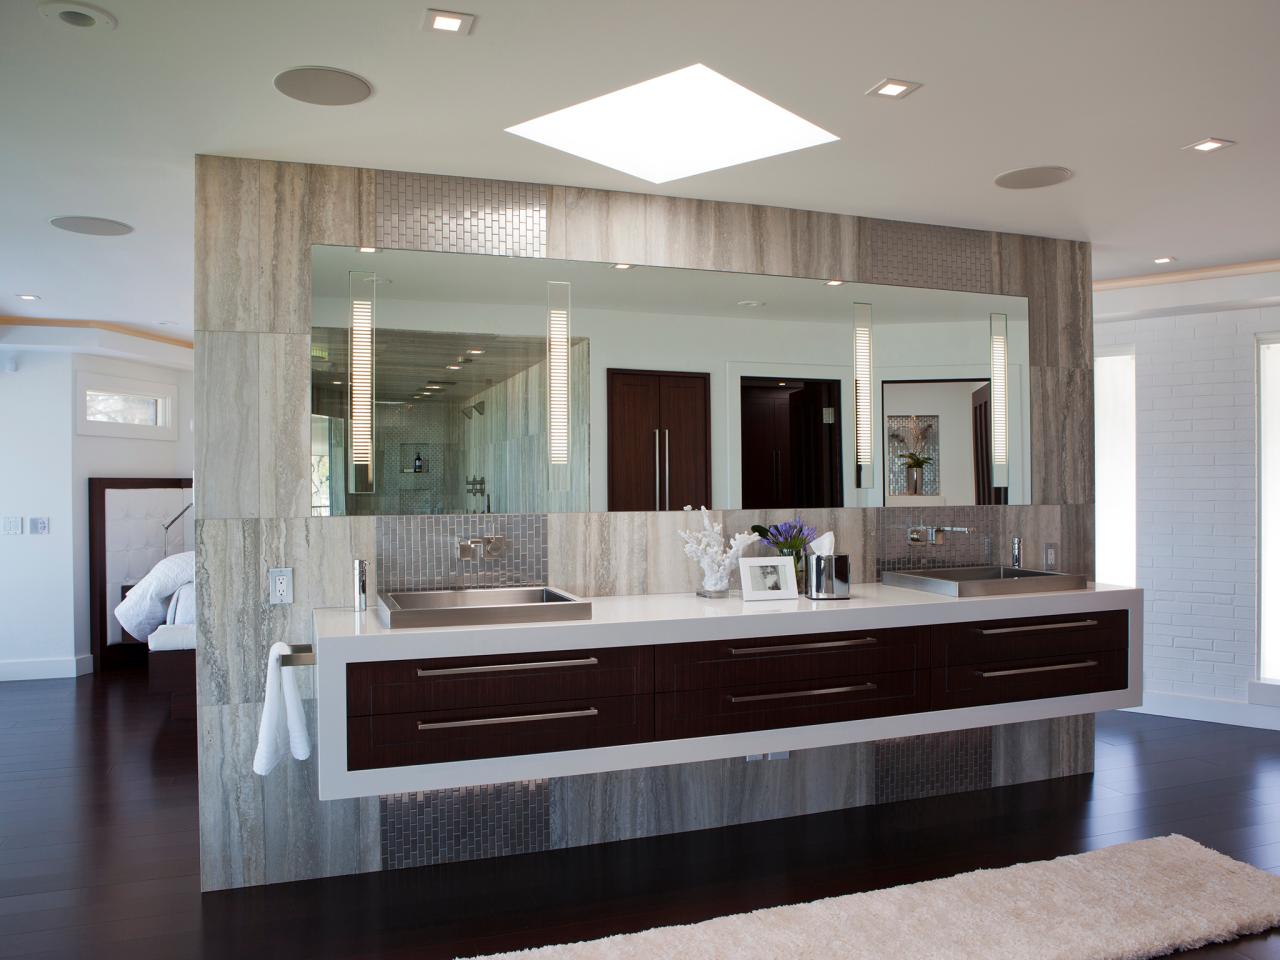 Bathroom Stainless Steel Sinks, Contemporary Floating Vanity Sink